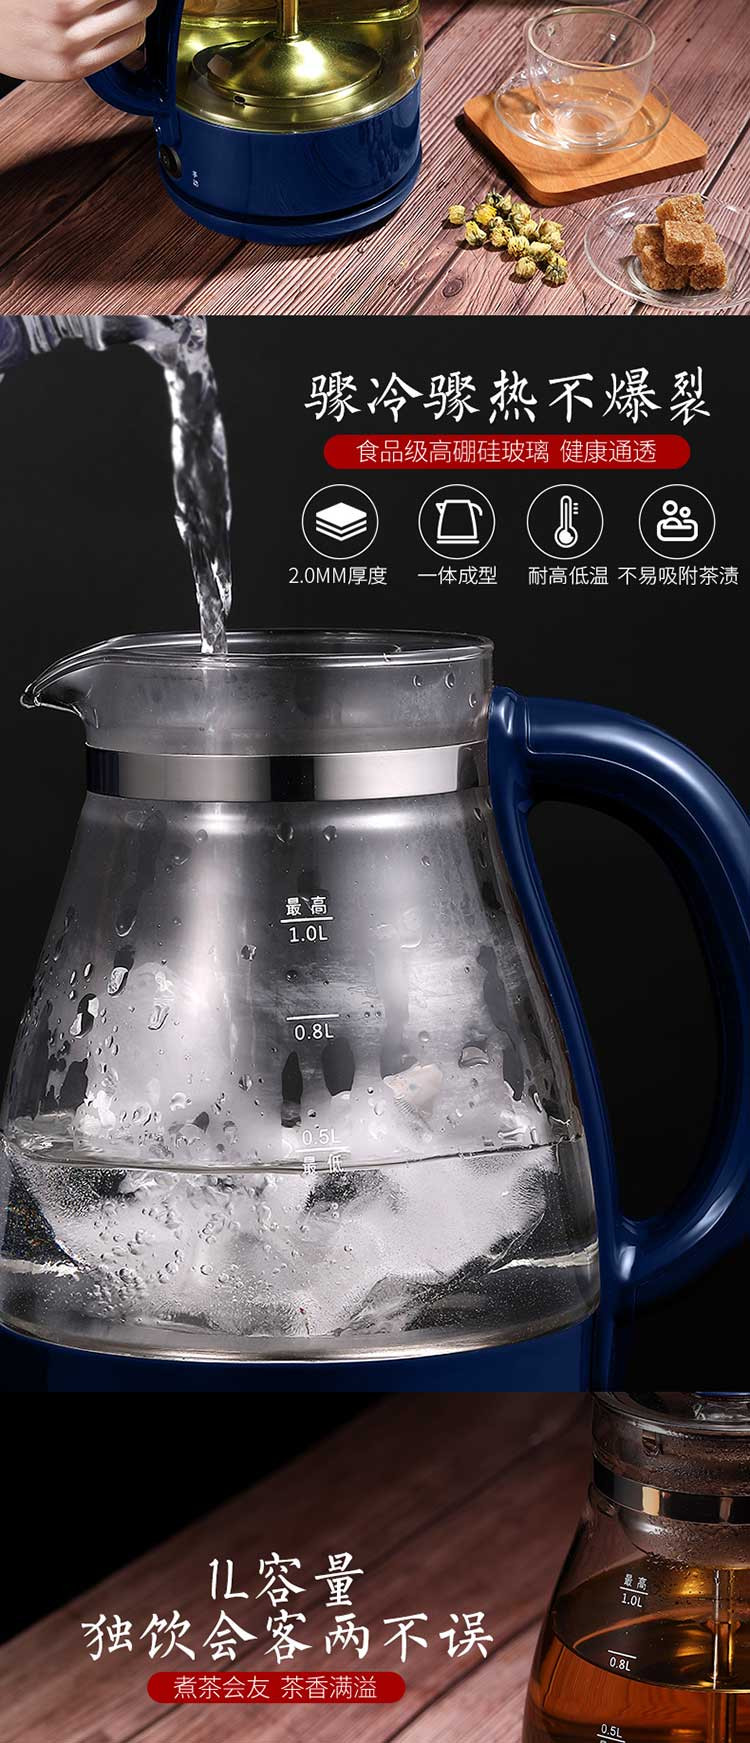 奥克斯AUX 1L蒸汽式煮茶器 HX-Z1002H